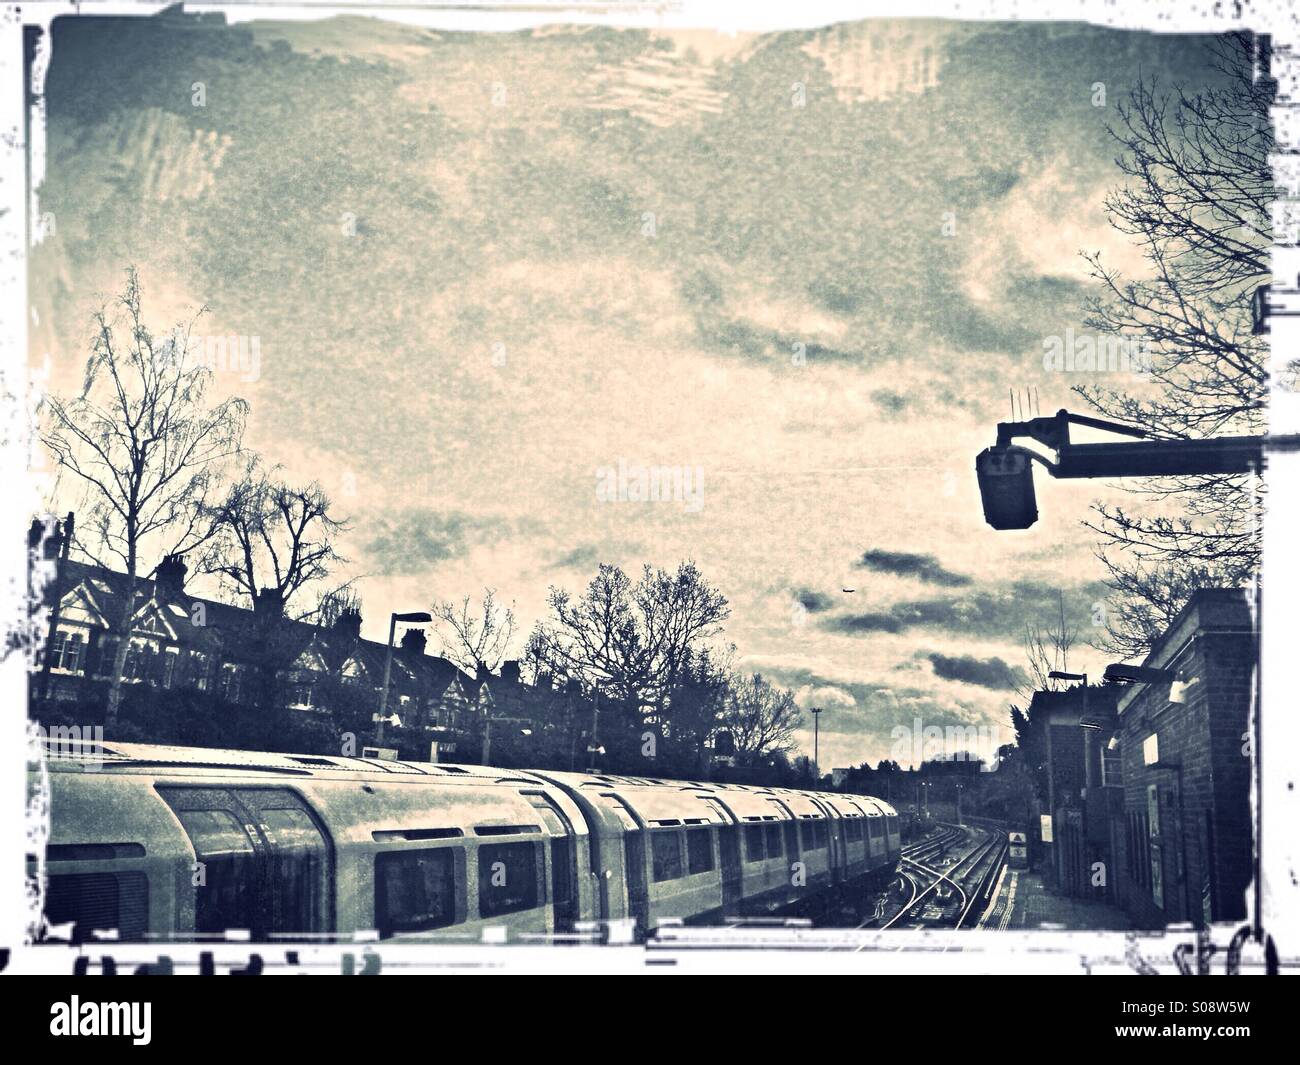 Tubo de tren en la estación de metro de Ealing Common, London, UK Foto de stock